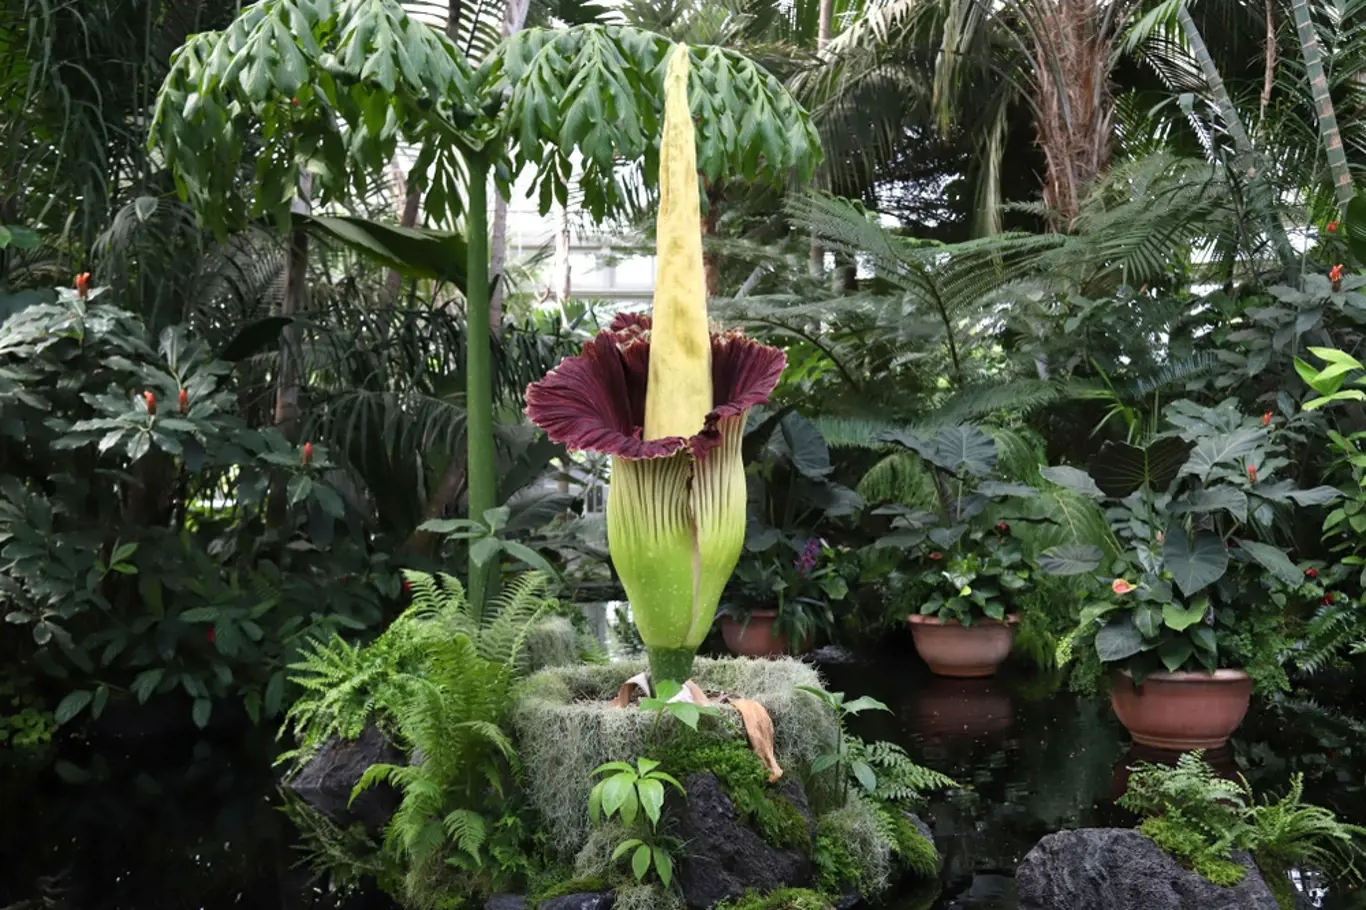 Zmijovec titánský patří k obdivovaným raritám botanických zahrad.